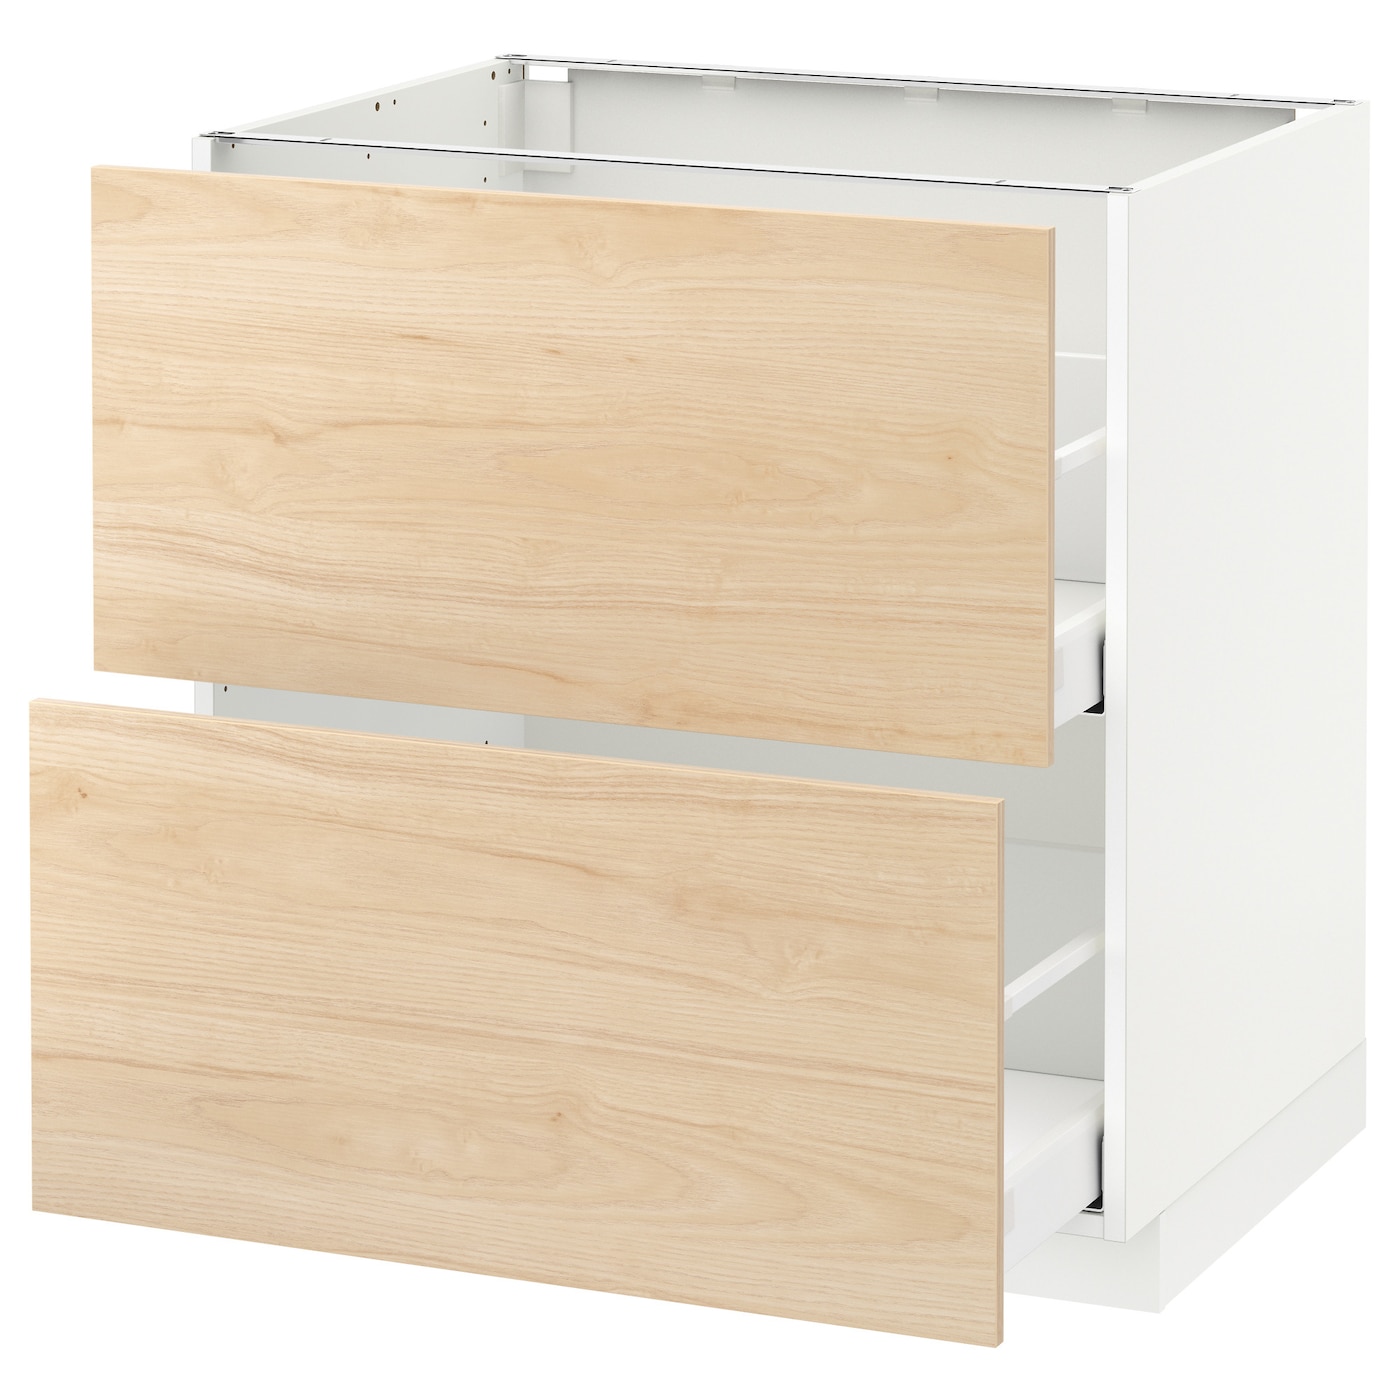 Напольный кухонный шкаф  - IKEA METOD MAXIMERA, 88x62x80см, белый/светлый ясень, МЕТОД МАКСИМЕРА ИКЕА